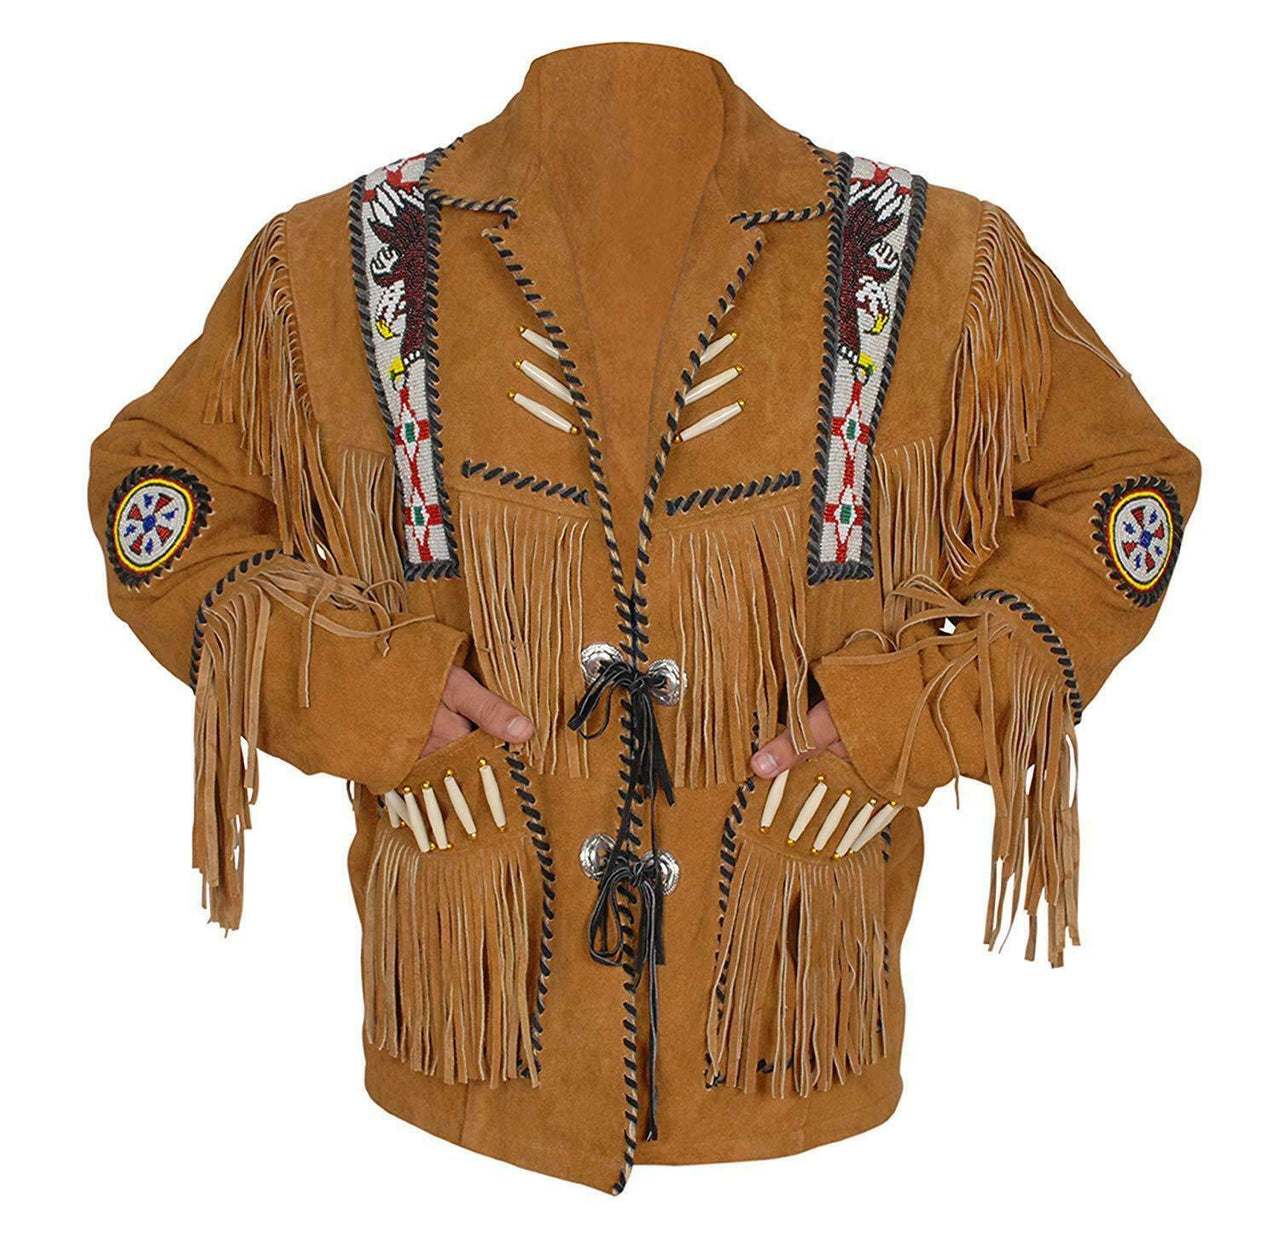 Western Wear Fringe Style Bone Beads Coat Suede Leather Cowboy Jacket Handmade